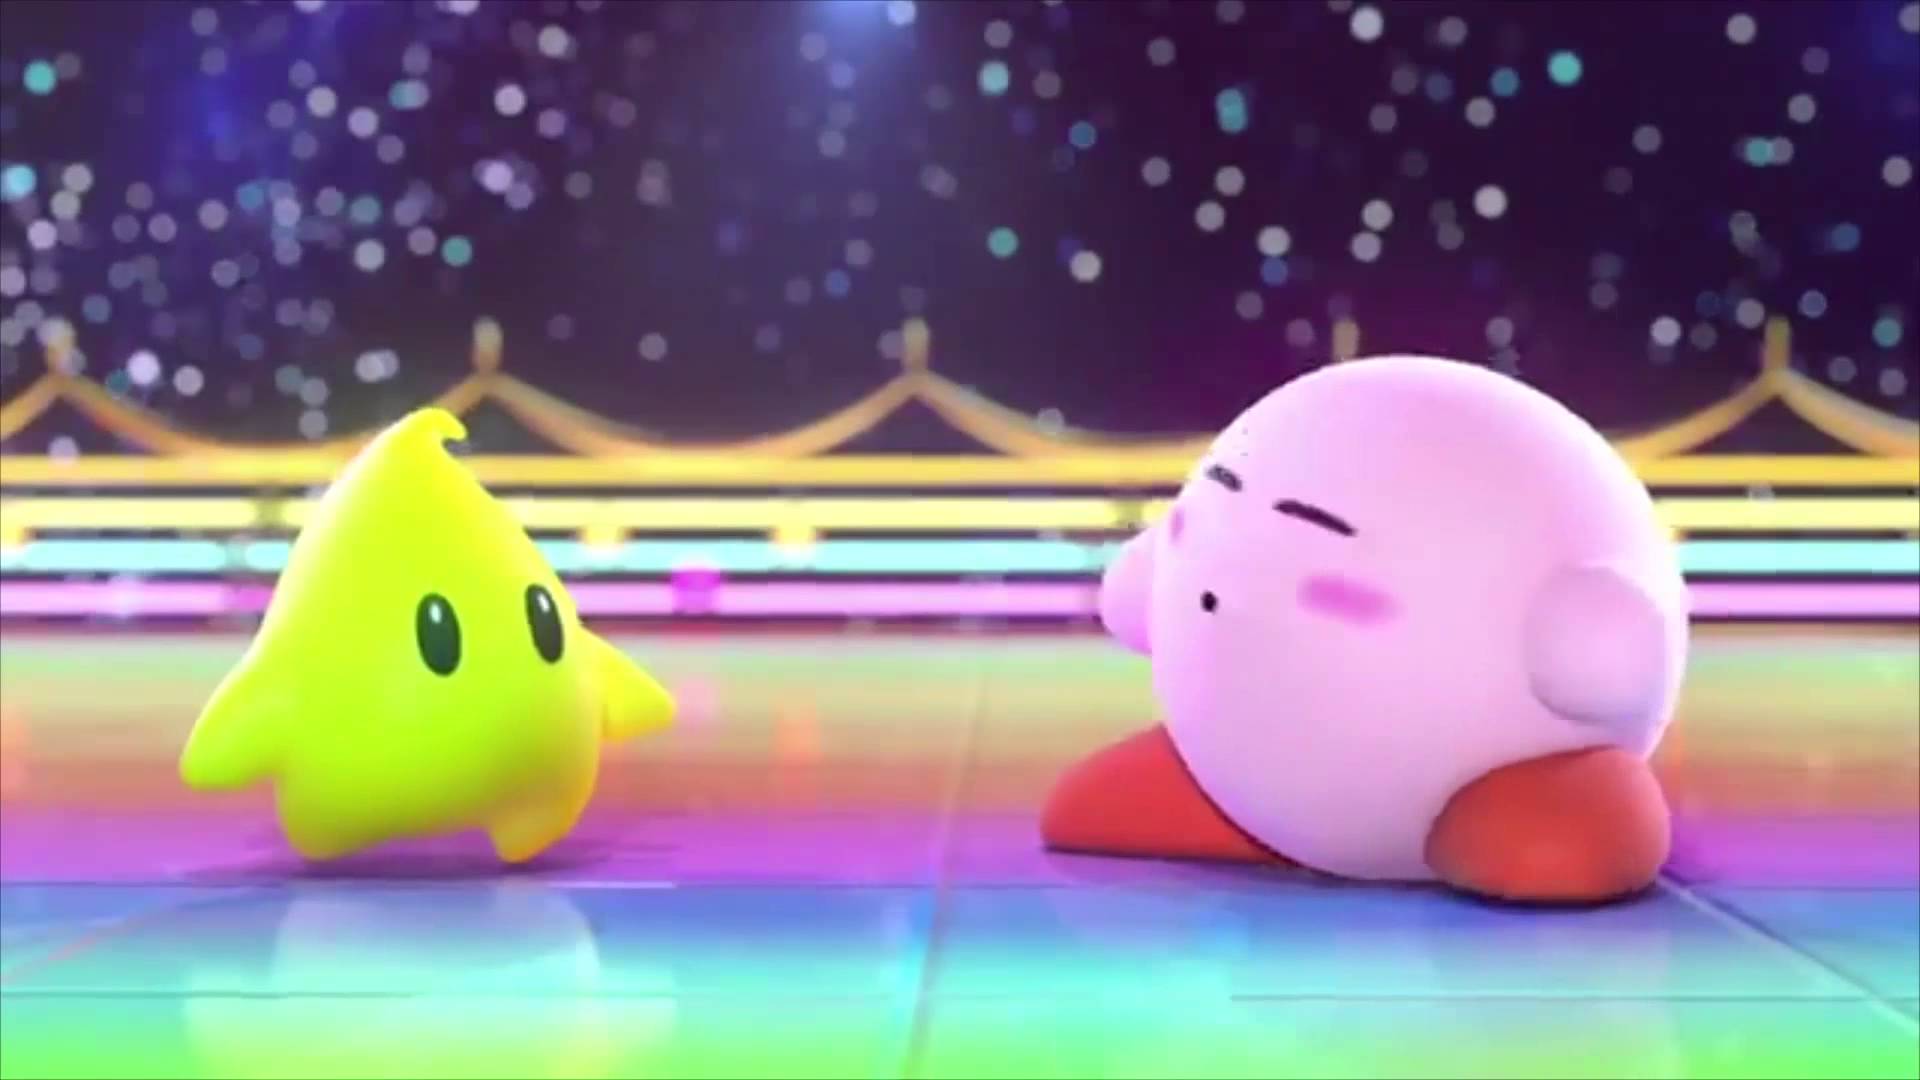 Bạn đang tìm kiếm một hình nền đáng yêu cho máy tính của mình? Hãy tải miễn phí hình nền Kirby với nhiều màu sắc và hình ảnh đáng yêu nhất cho chiếc máy tính của bạn. Sẵn sàng để để giữ cho tâm trạng bạn luôn tươi tắn và đáng yêu!